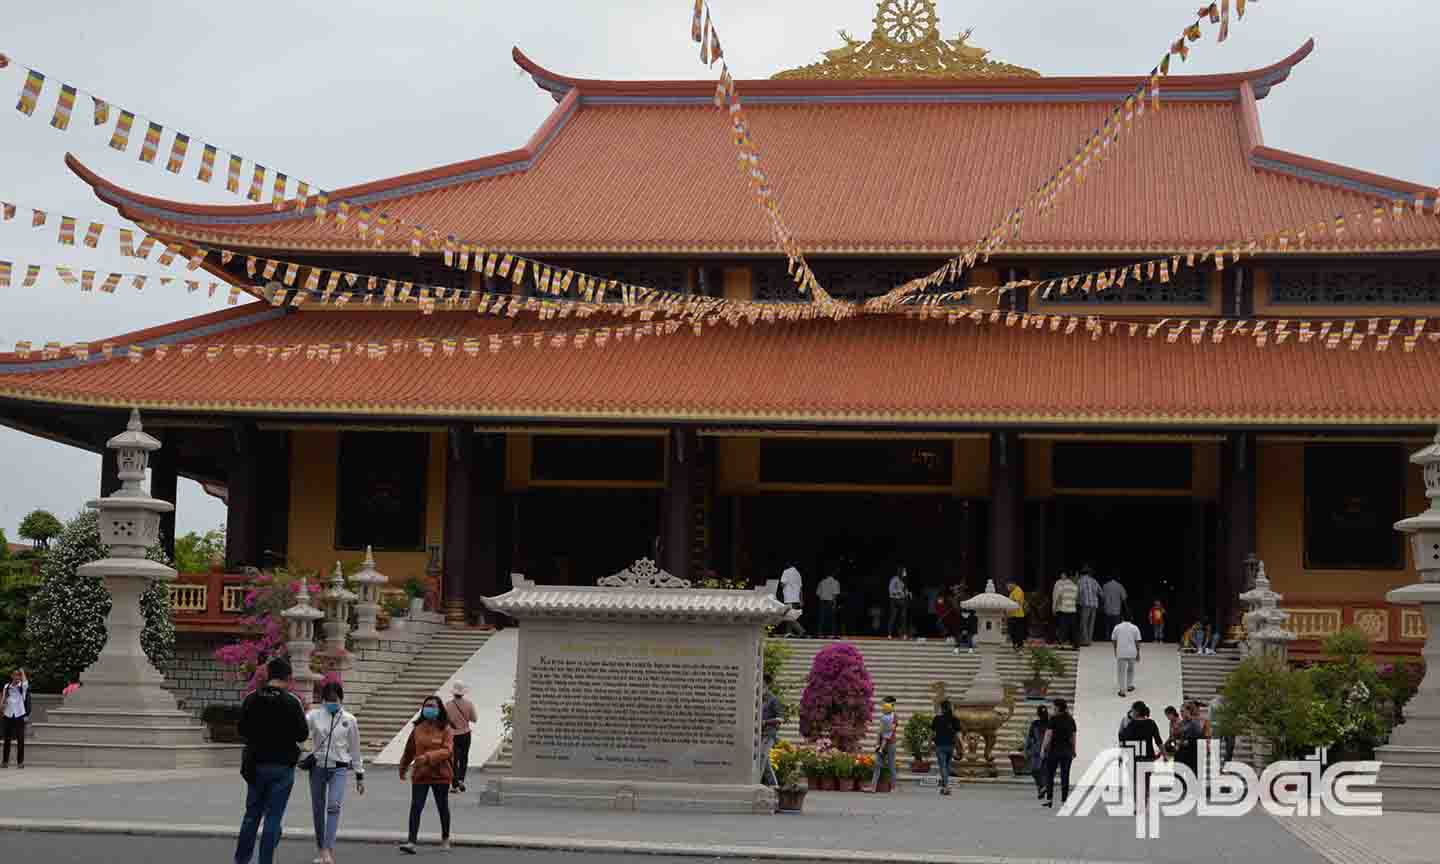 Lượng khách đến viếng Thiền viện có phần ít hơn so với mọi năm. Ngày 26-2, lượng khách có thể tăng thêm do đúng vào ngày rằm tháng Giêng.